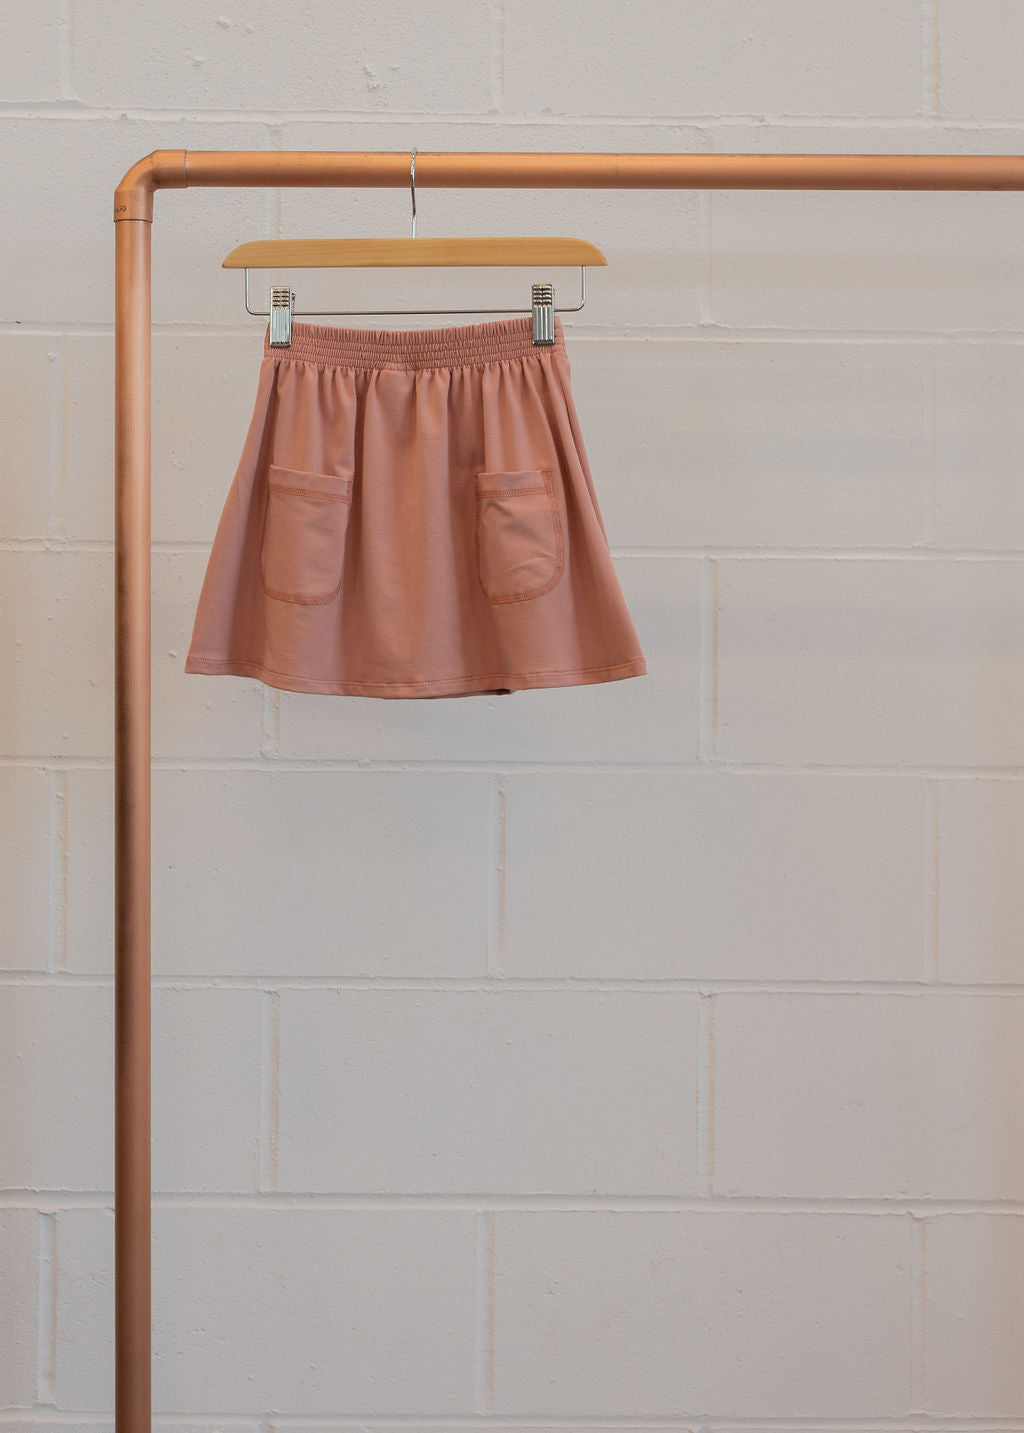 Back to Basics:  Pocket Skirt